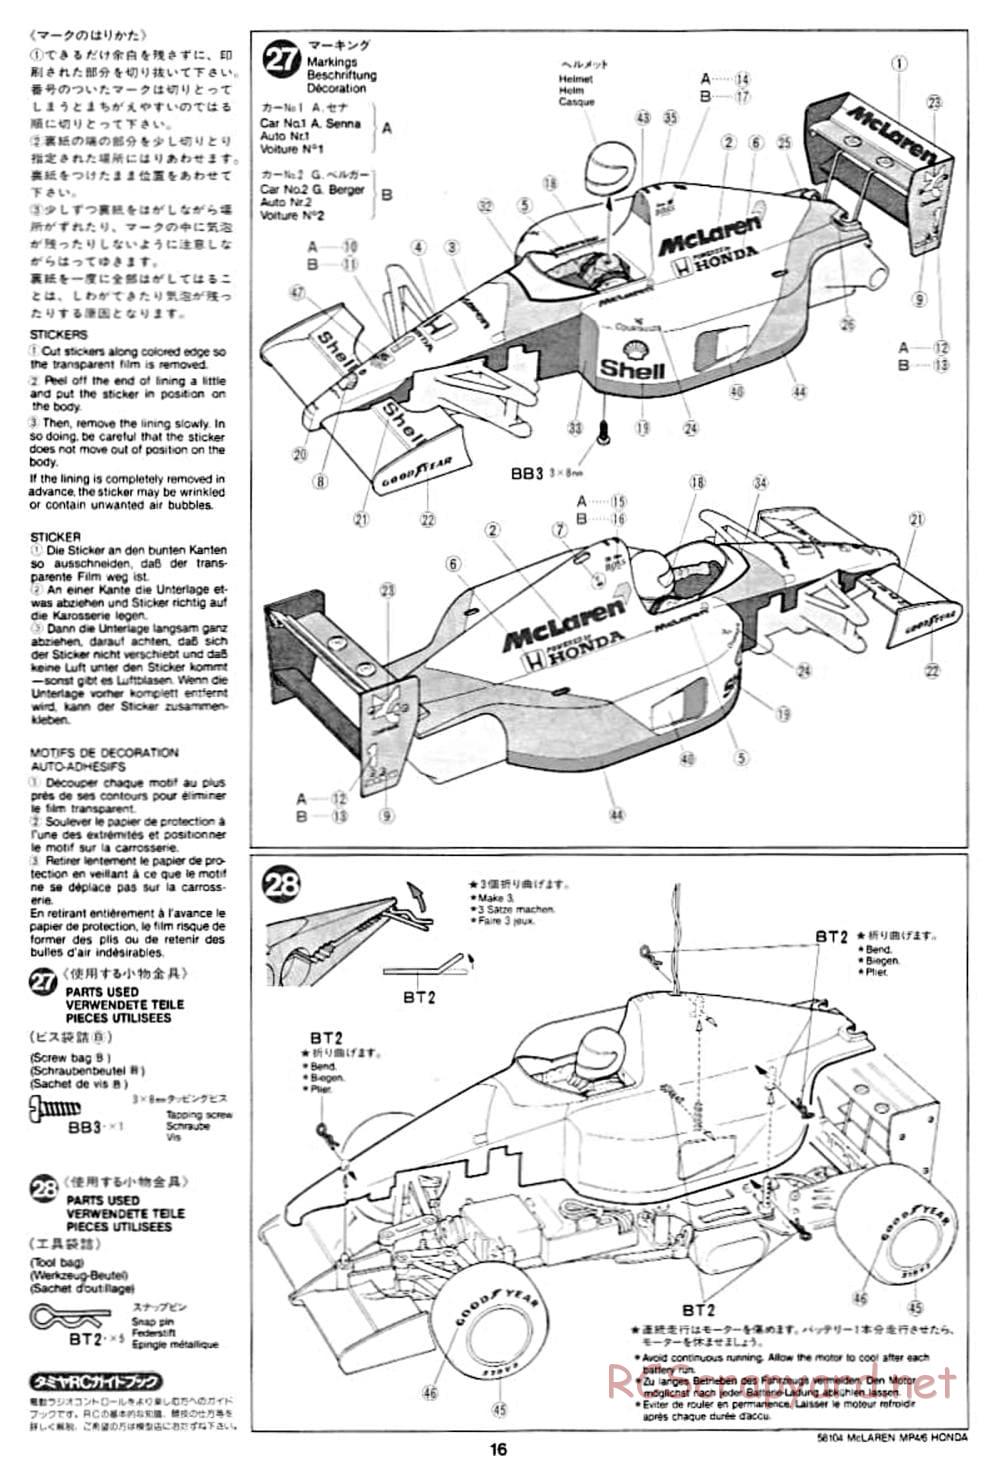 Tamiya - McLaren MP4/6 Honda - F102 Chassis - Manual - Page 16